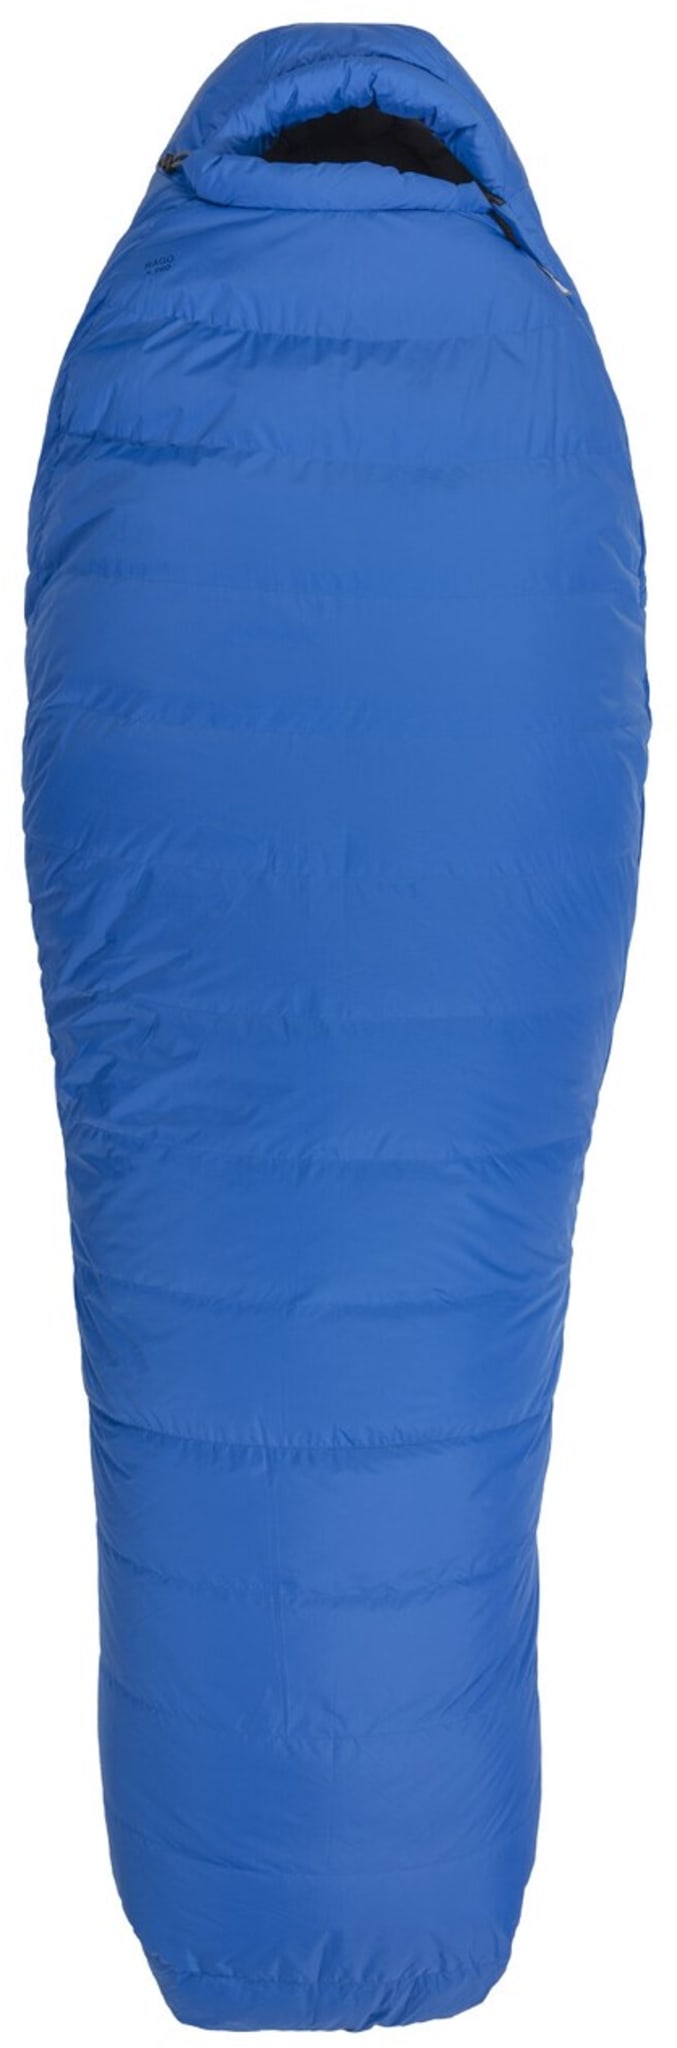 3-sesongs-sovepose med perfekt balanse mellom varme, vekt og pakkvolum